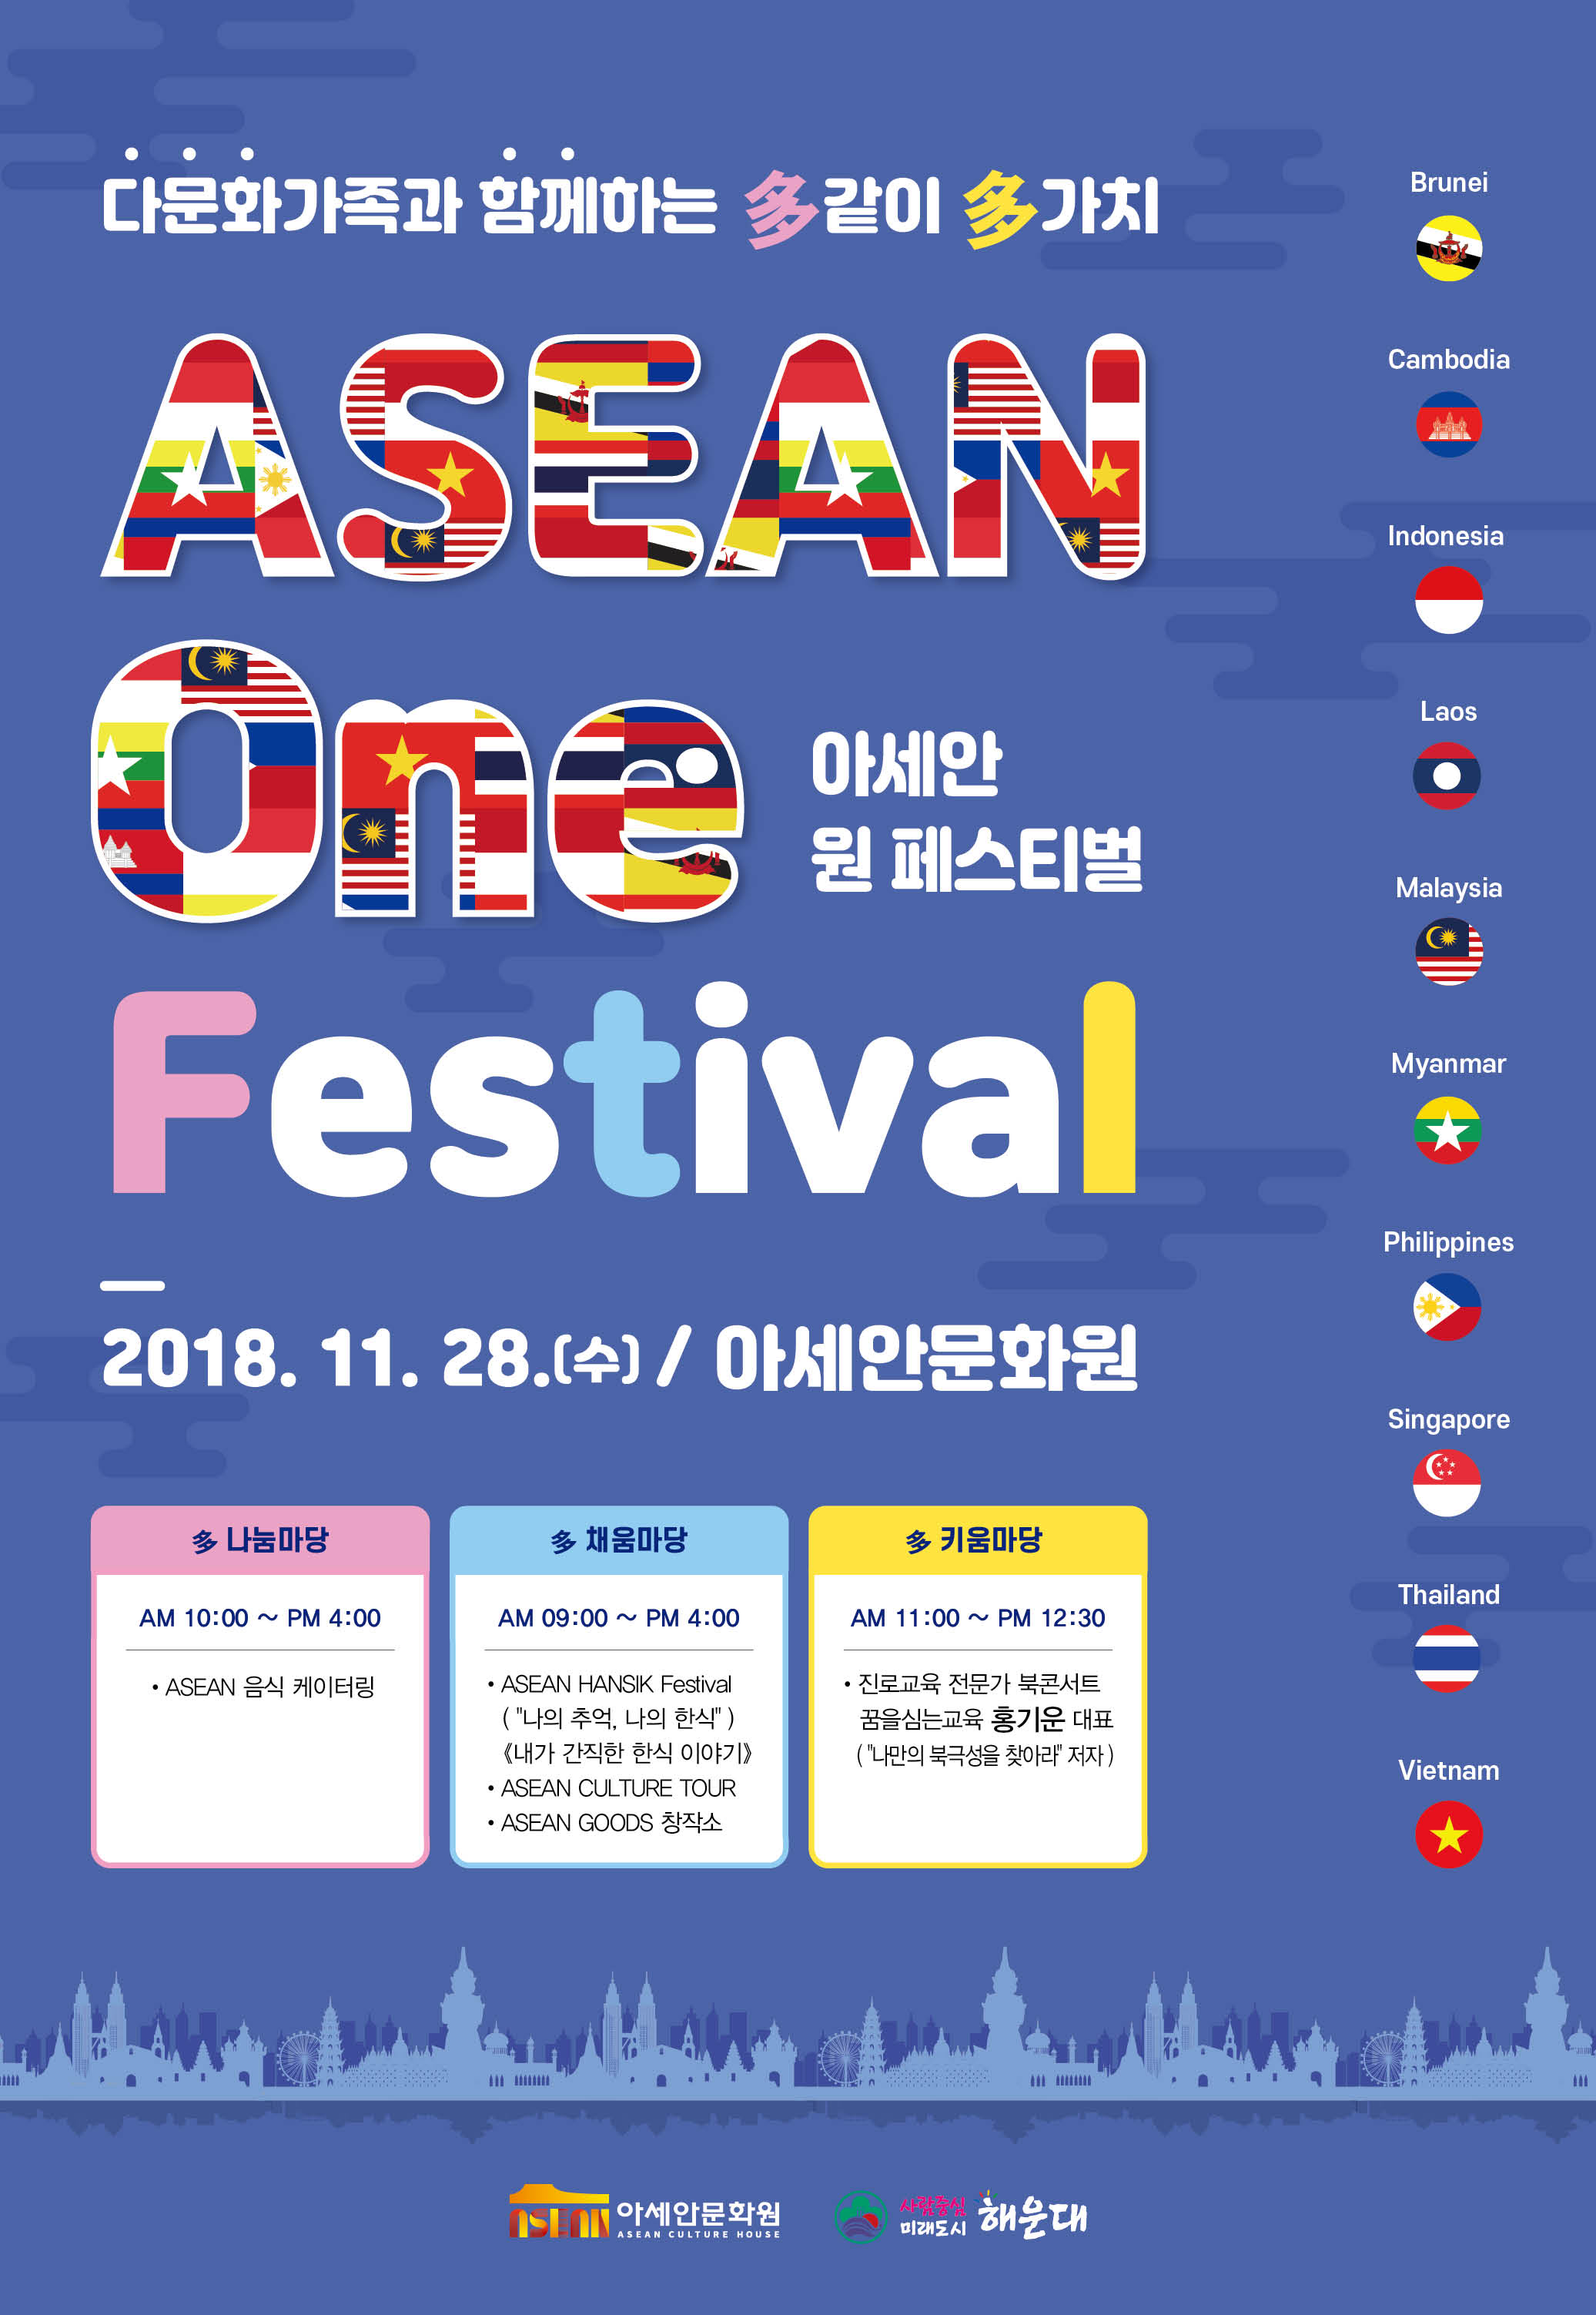 다문화가족과 함께하는 多같이 多가치 ASEAN One Festival 